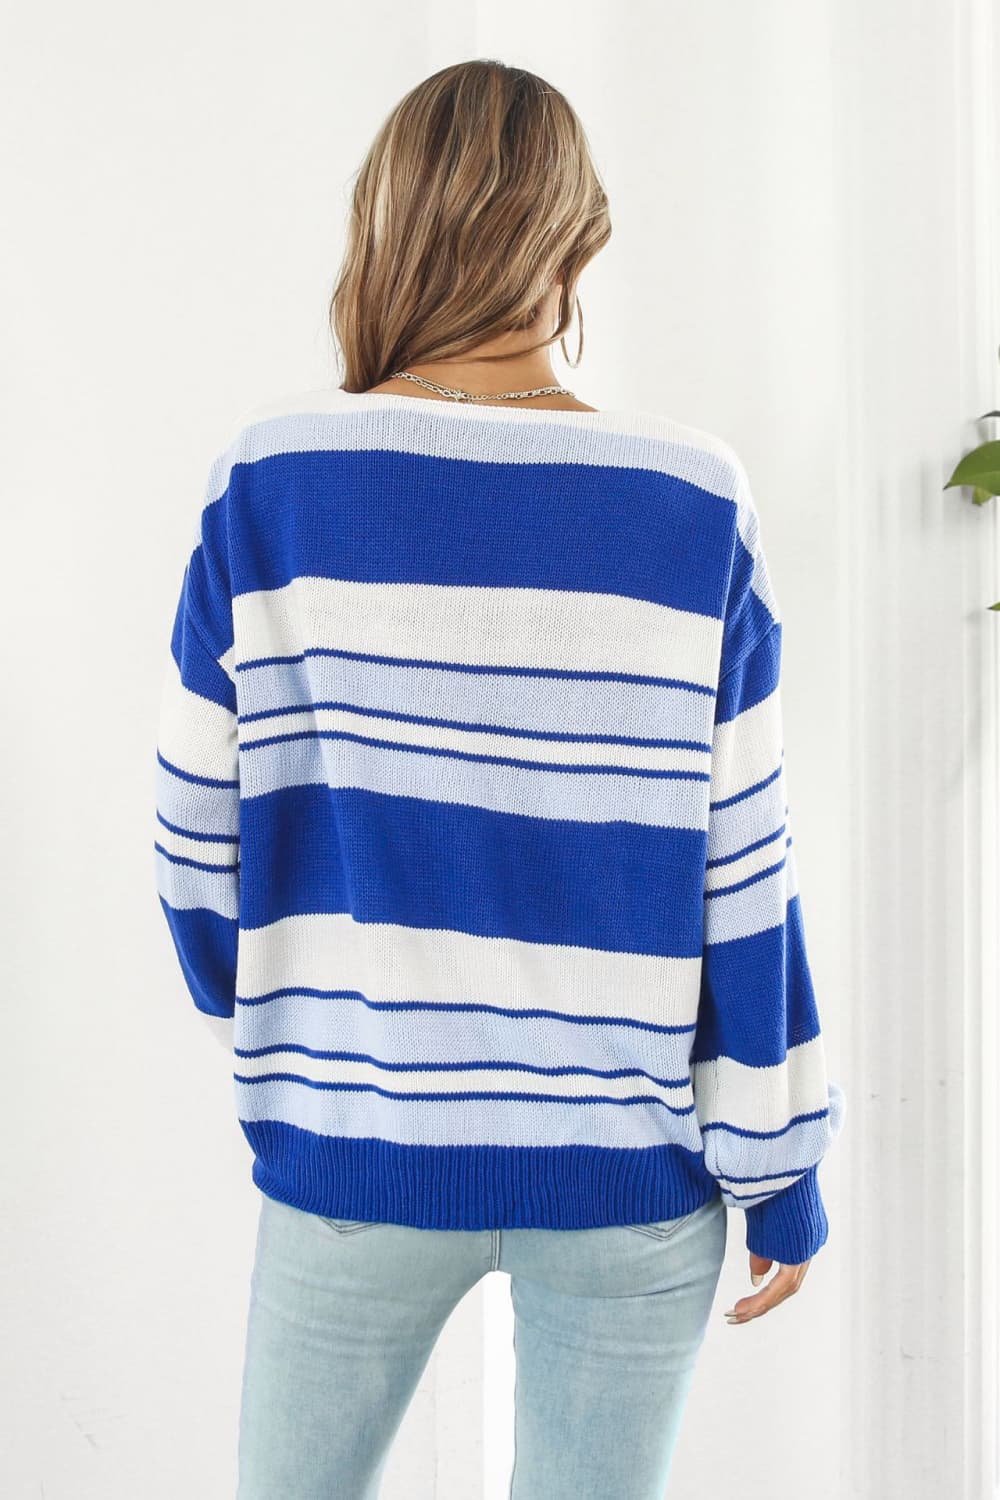 ZELDAlea Striped V-Neck Dropped Shoulder Sweater